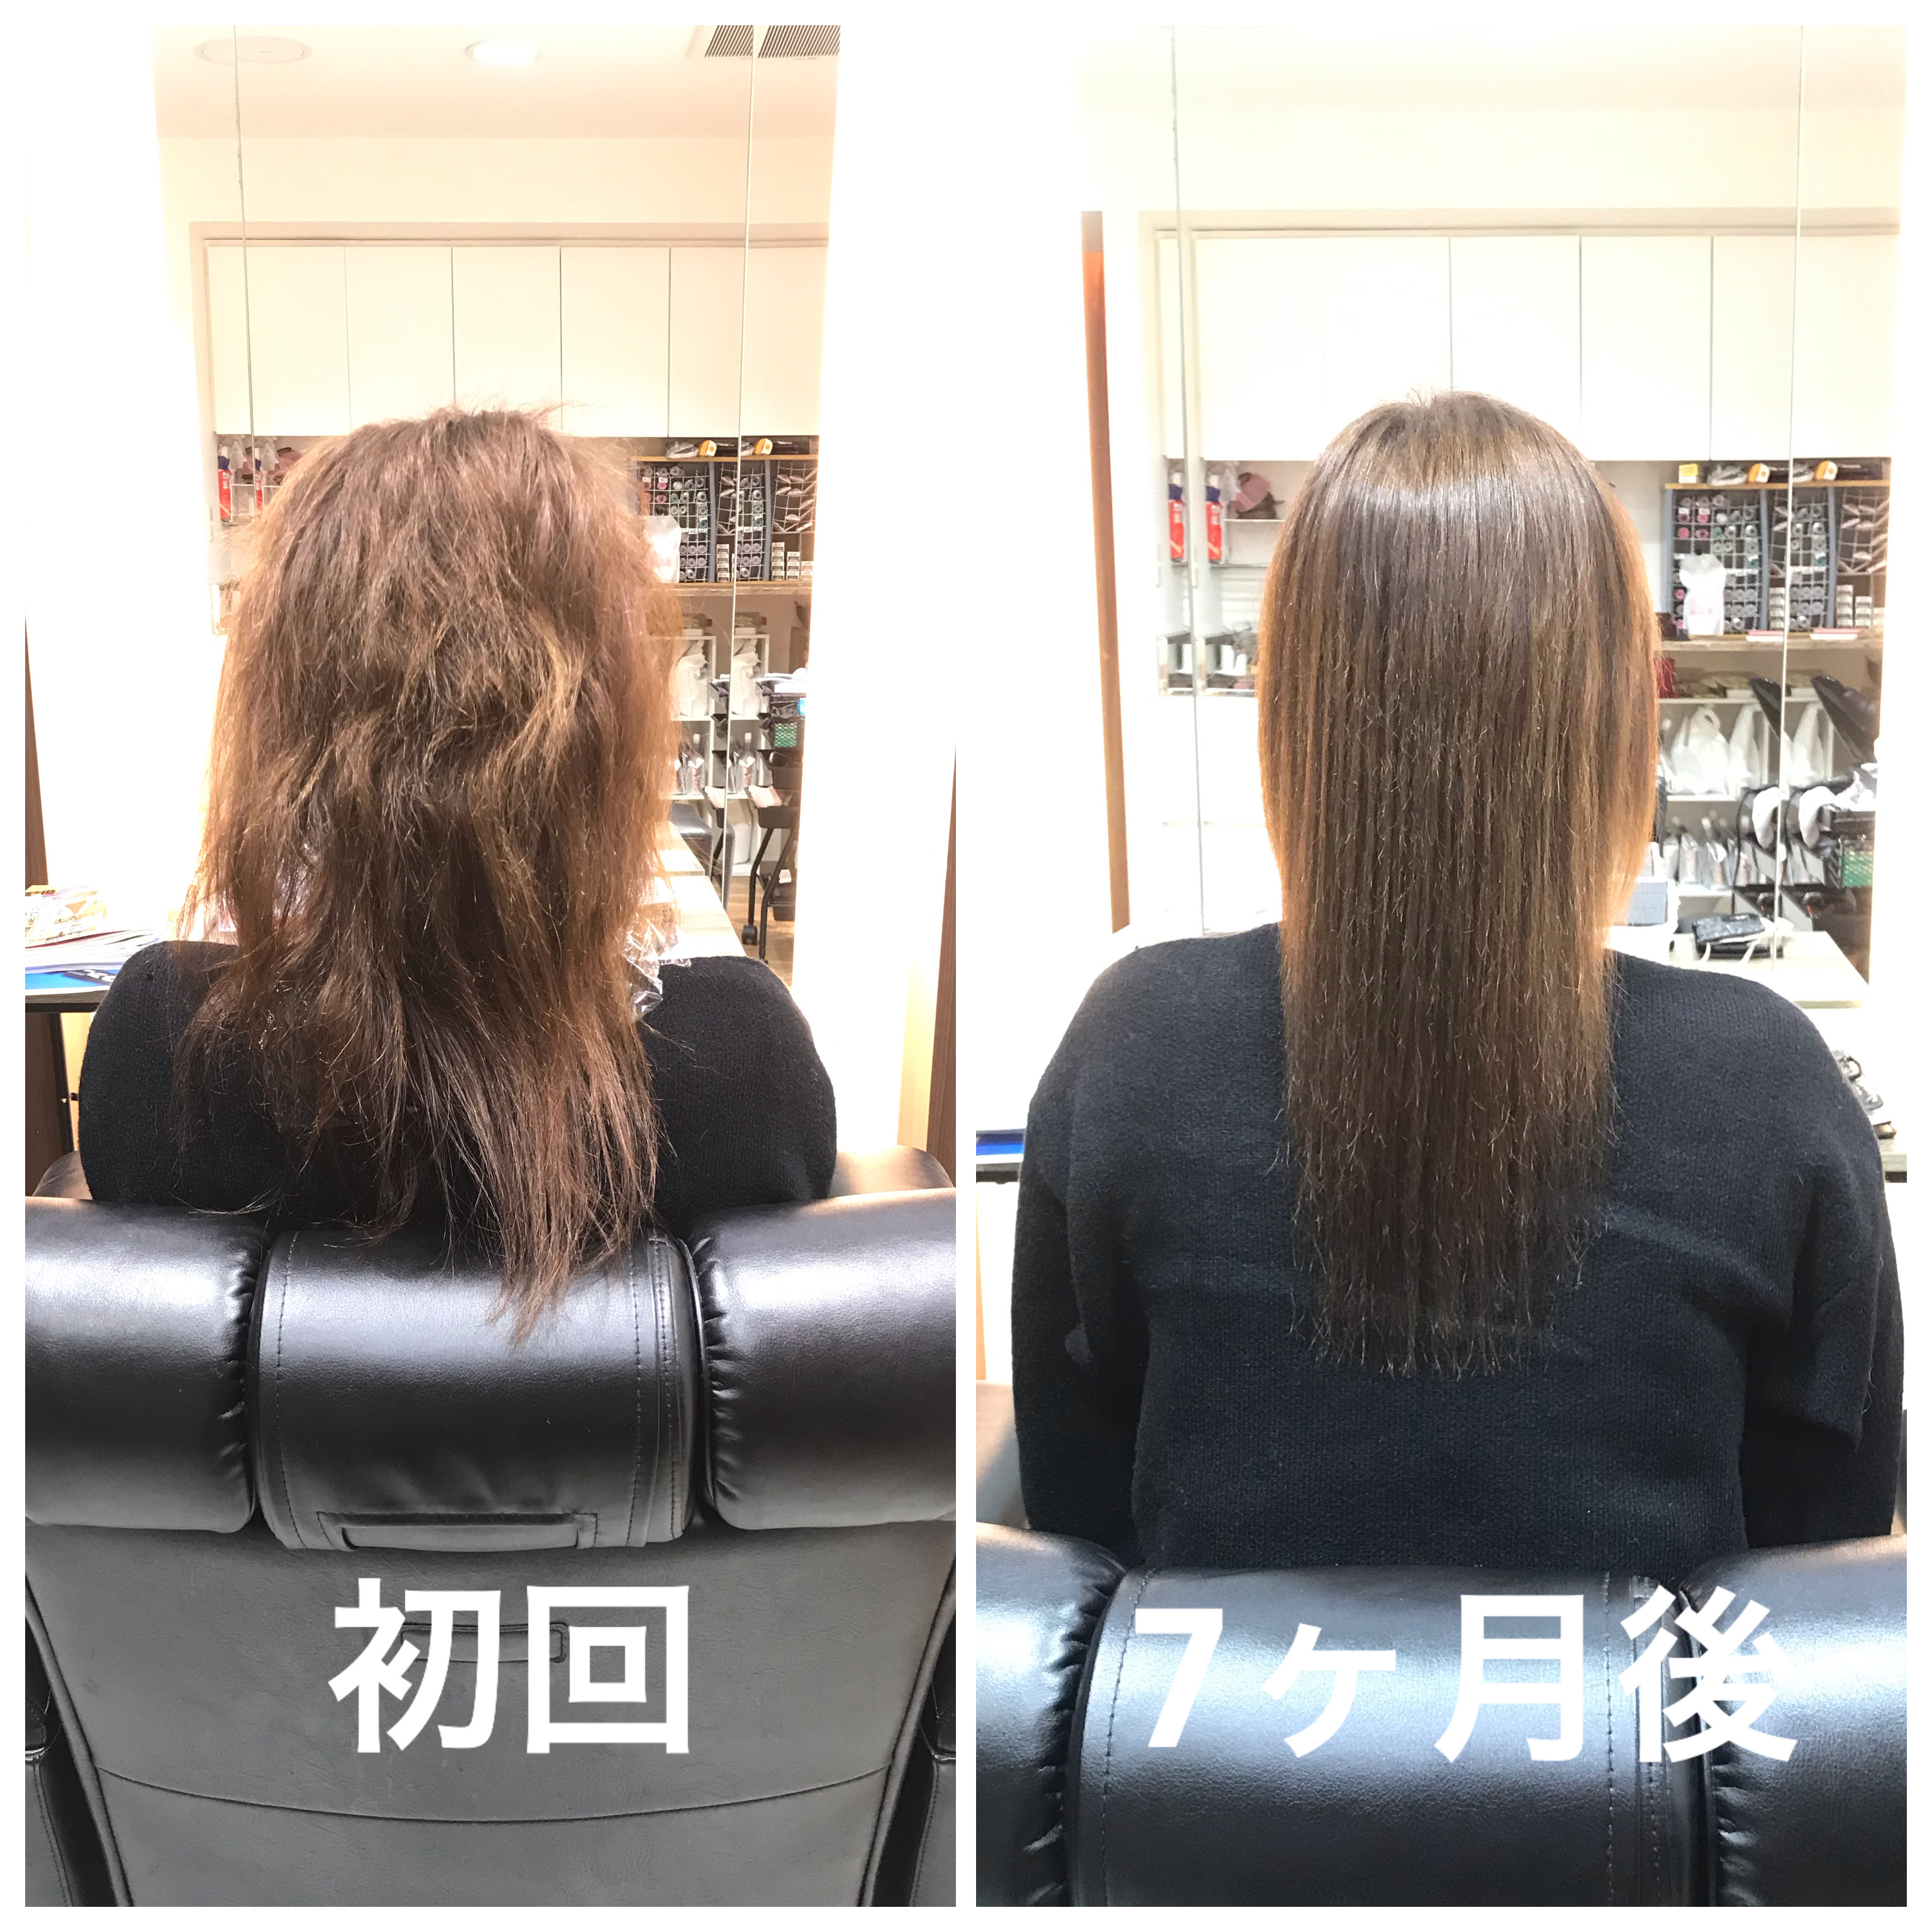 いつもくくらないといけなかった髪が おろせるようになりました 奈良県香芝市の髪質改善美容室dears ディアーズ